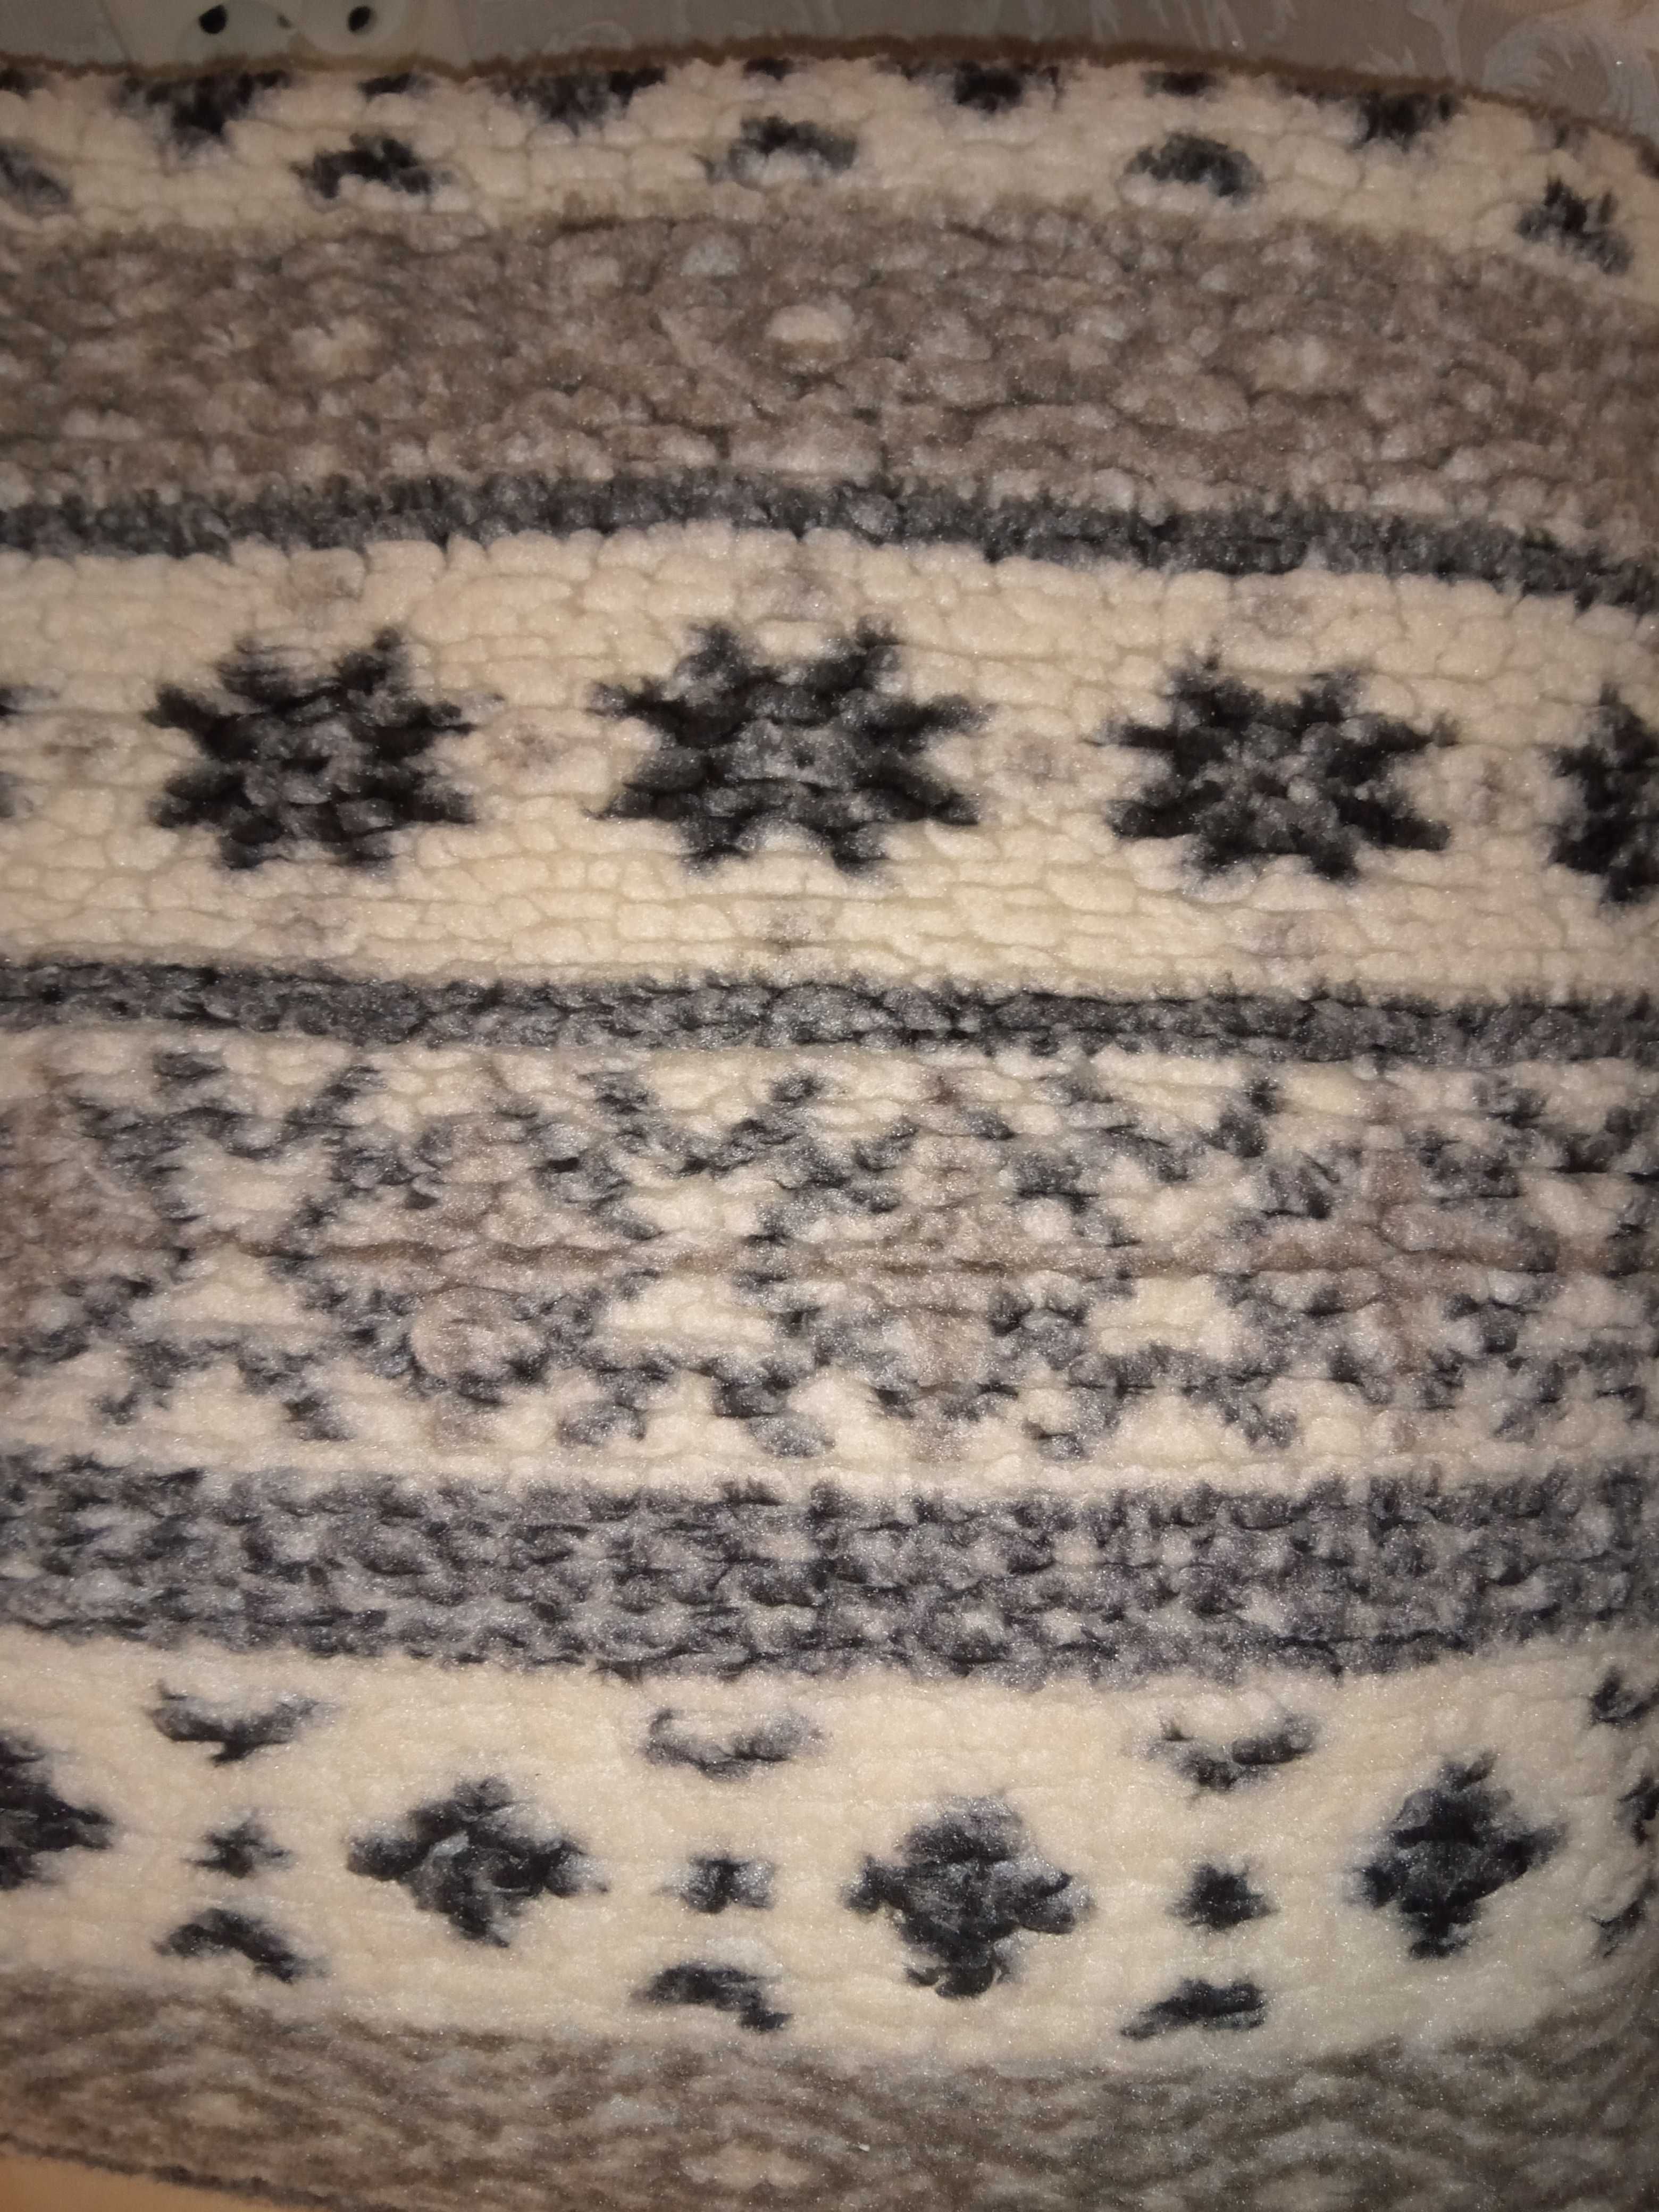 Тепла зимова ковдра (одеяло) - м'яка, приємна і затишна